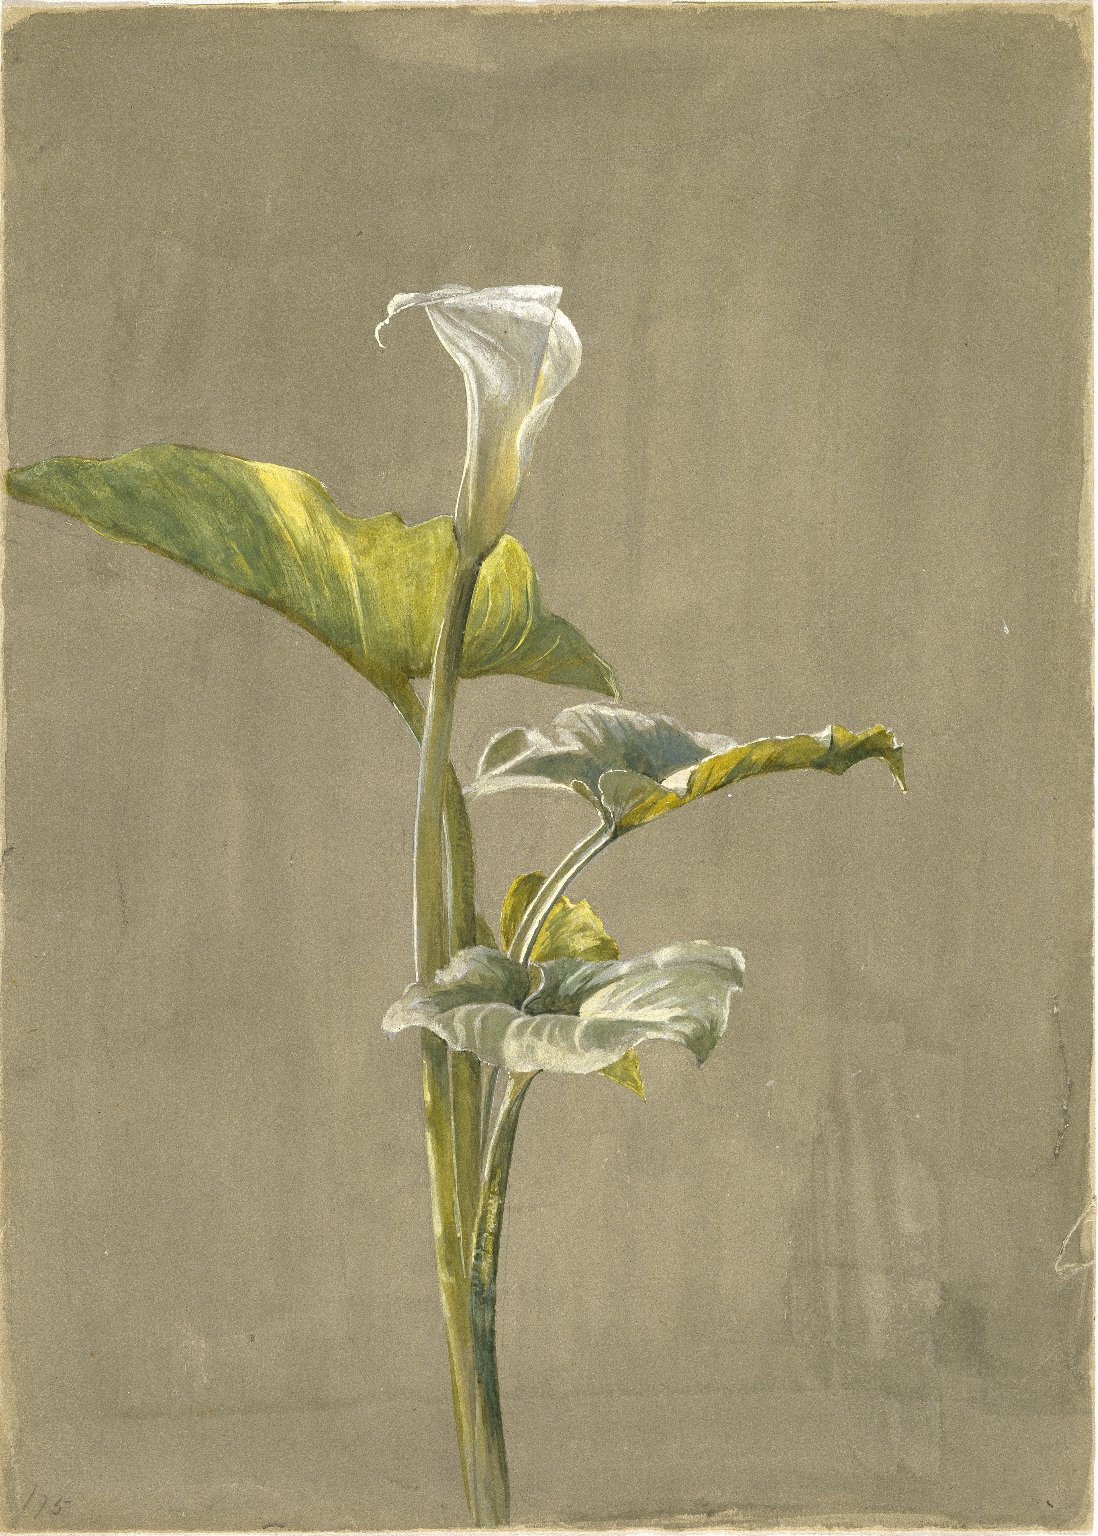 칼라 백합 by Fidelia Bridges - 1875년 - 35.6 x 24.5 cm 